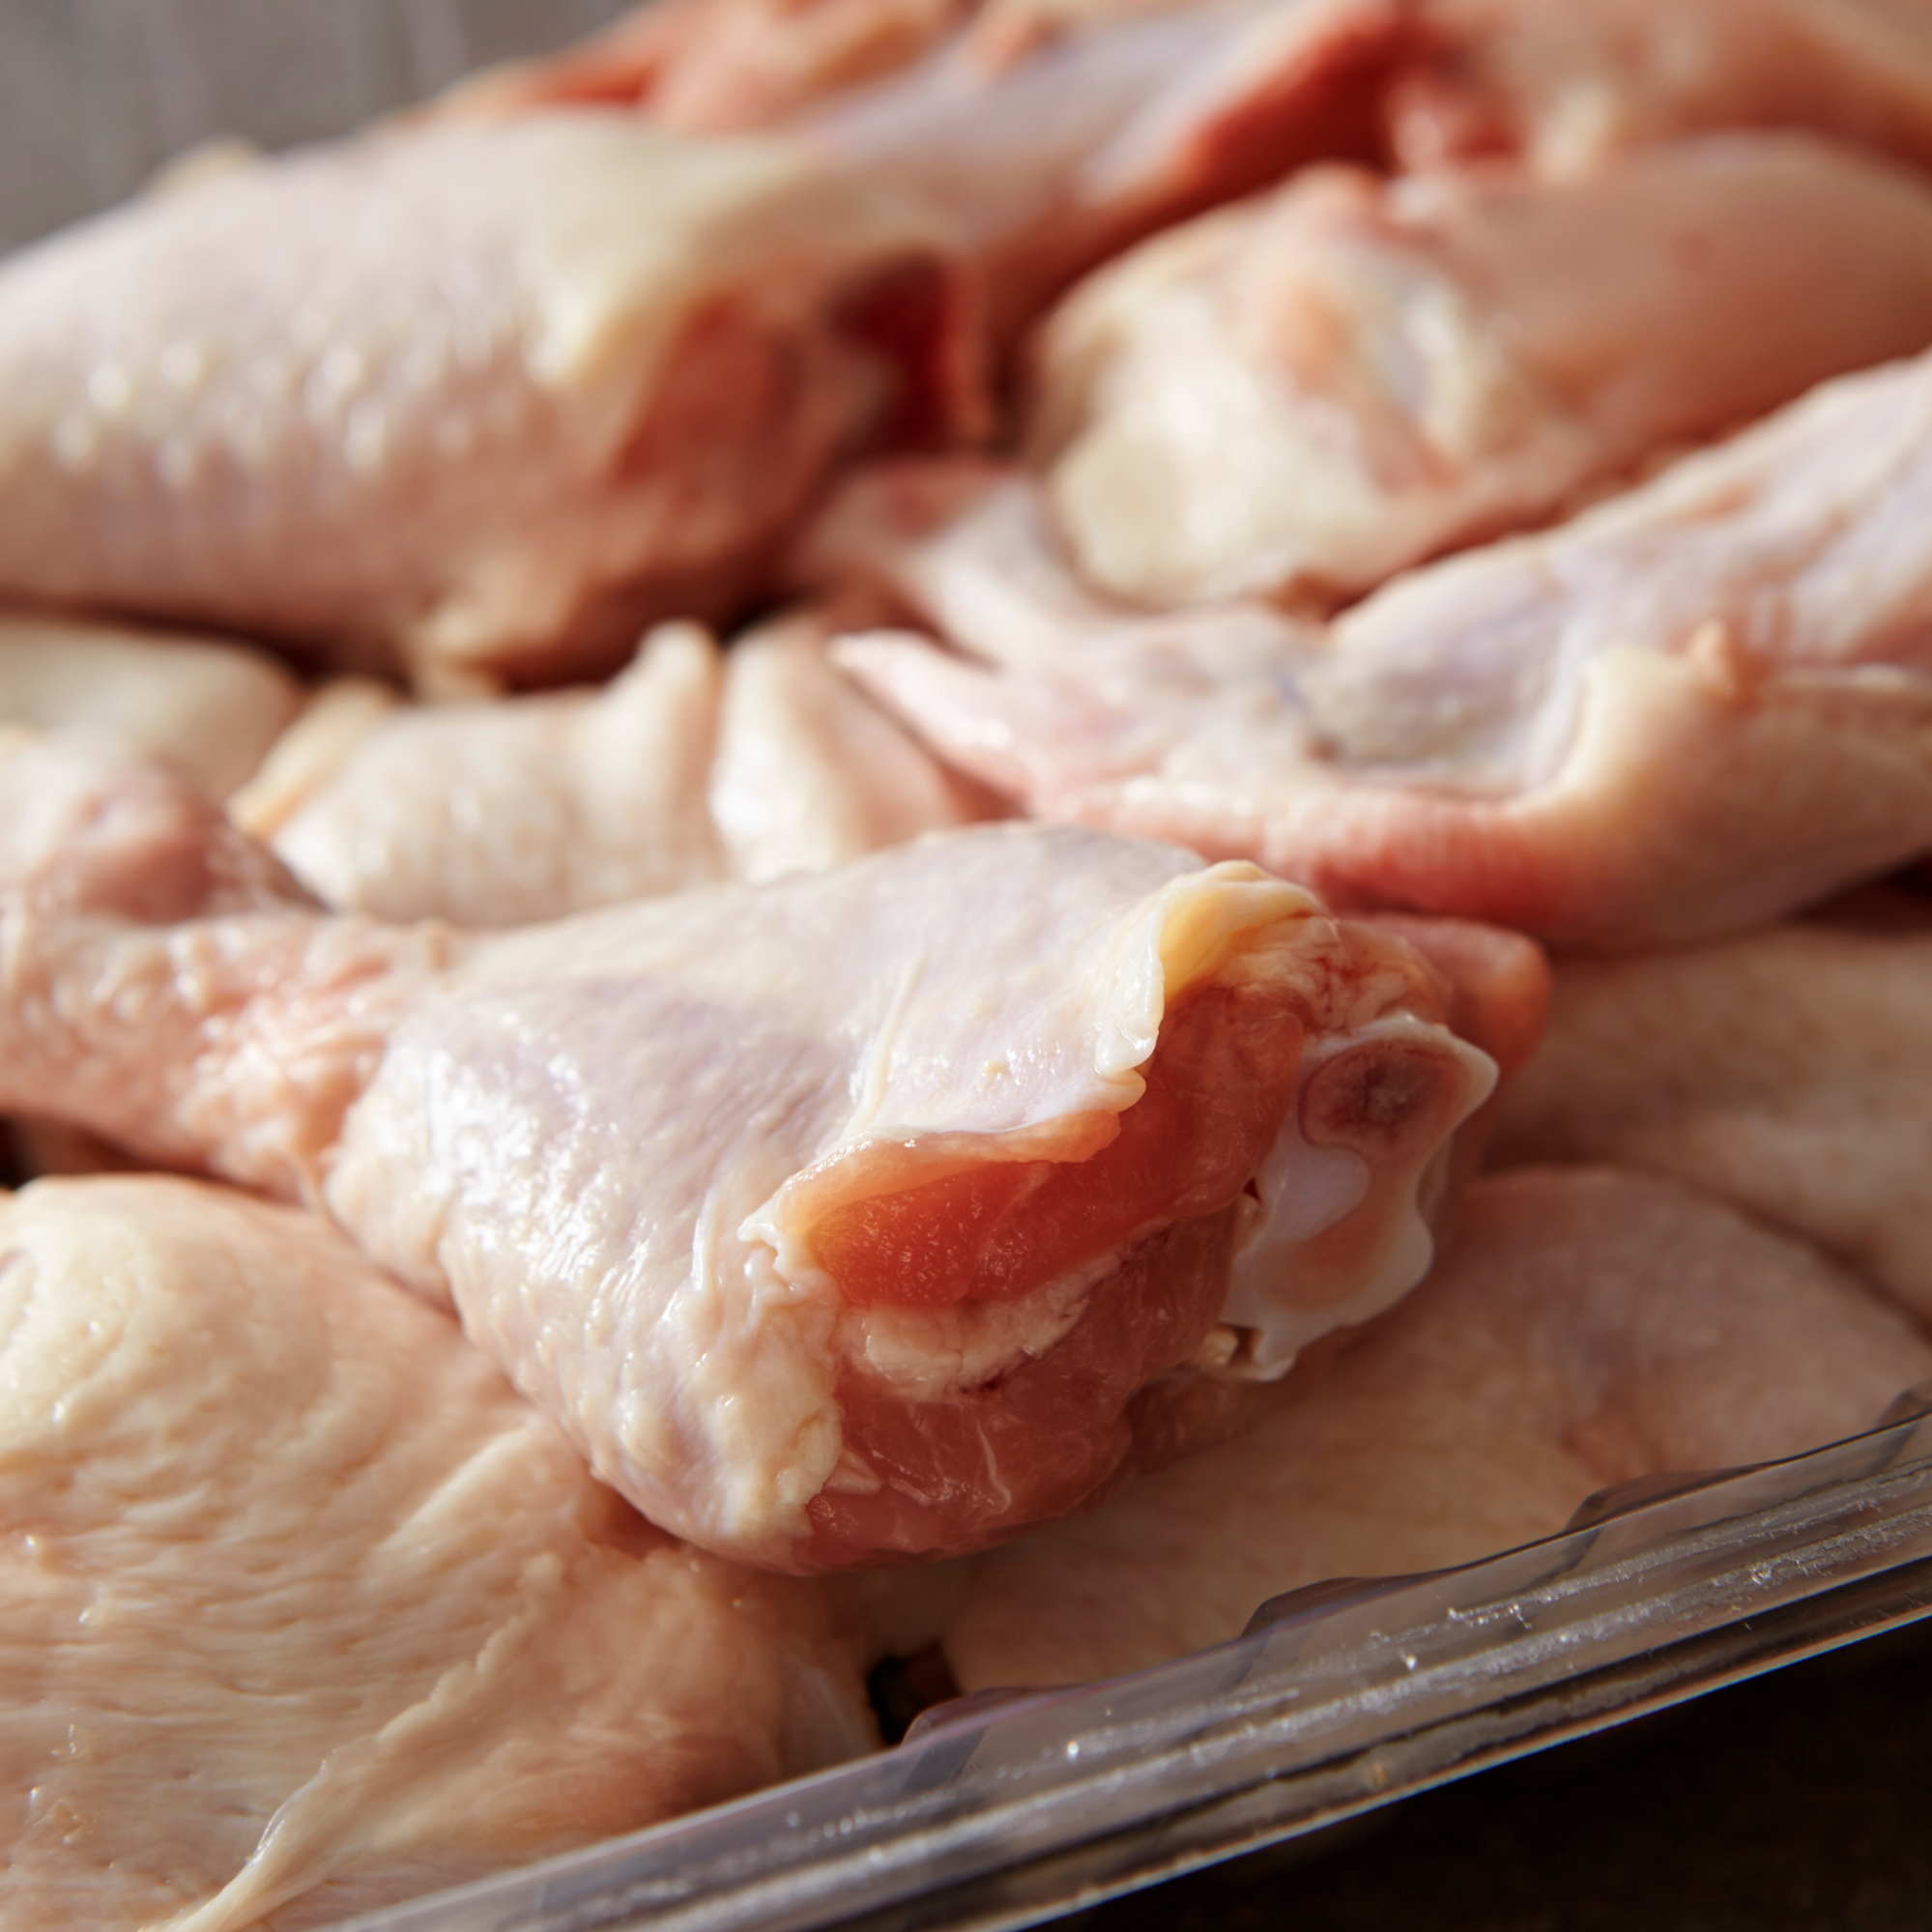 Bấm nhẹ vào ngực gà, da nên đàn hồi nhanh chóng. Nếu da chậm trở lại trạng thái ban đầu, có thể gà đã không còn tươi ngon.